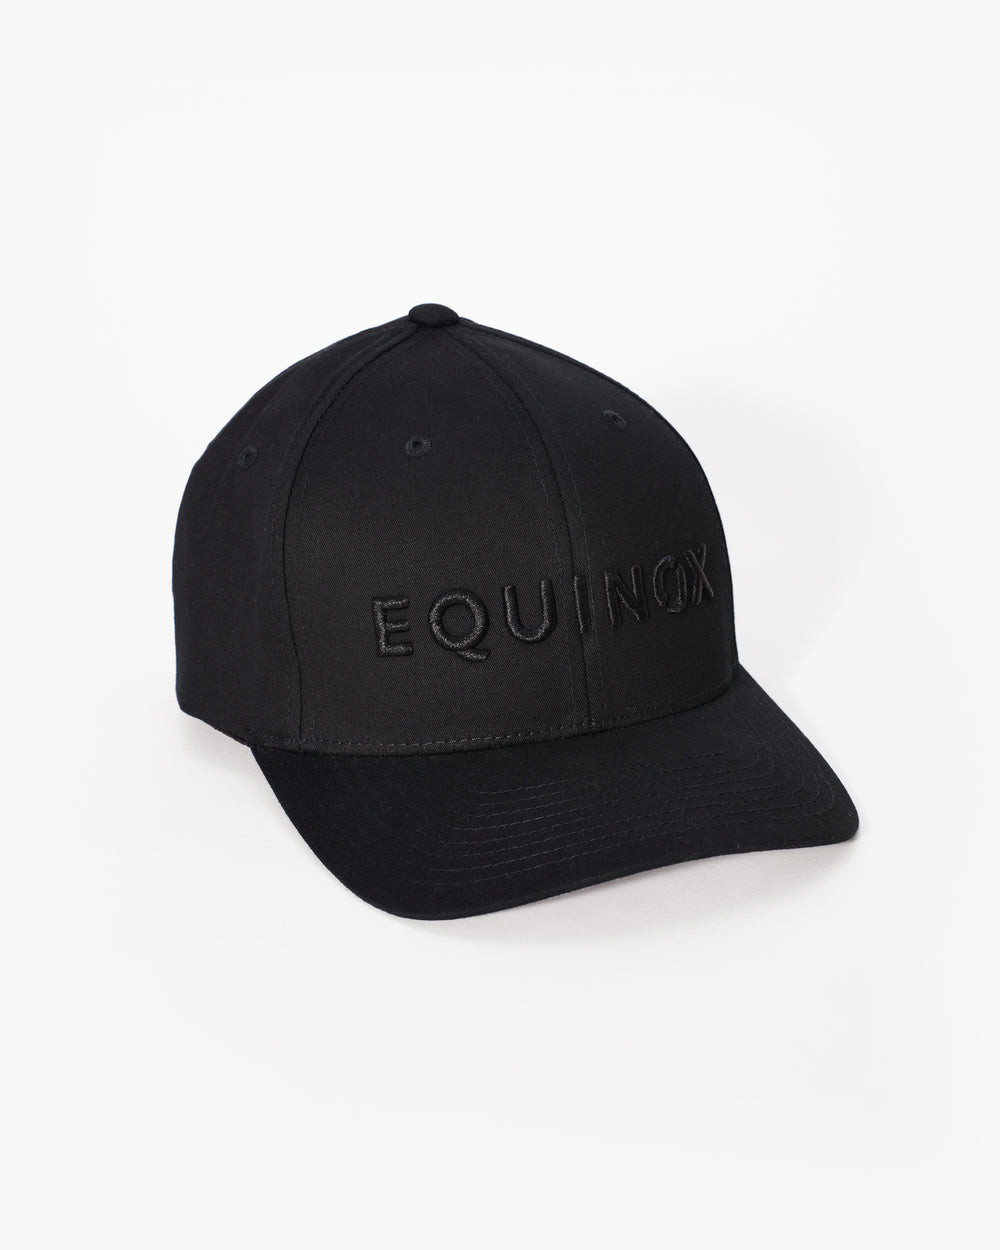 – Equinox Fit Shop Hat at Flex The Equinox